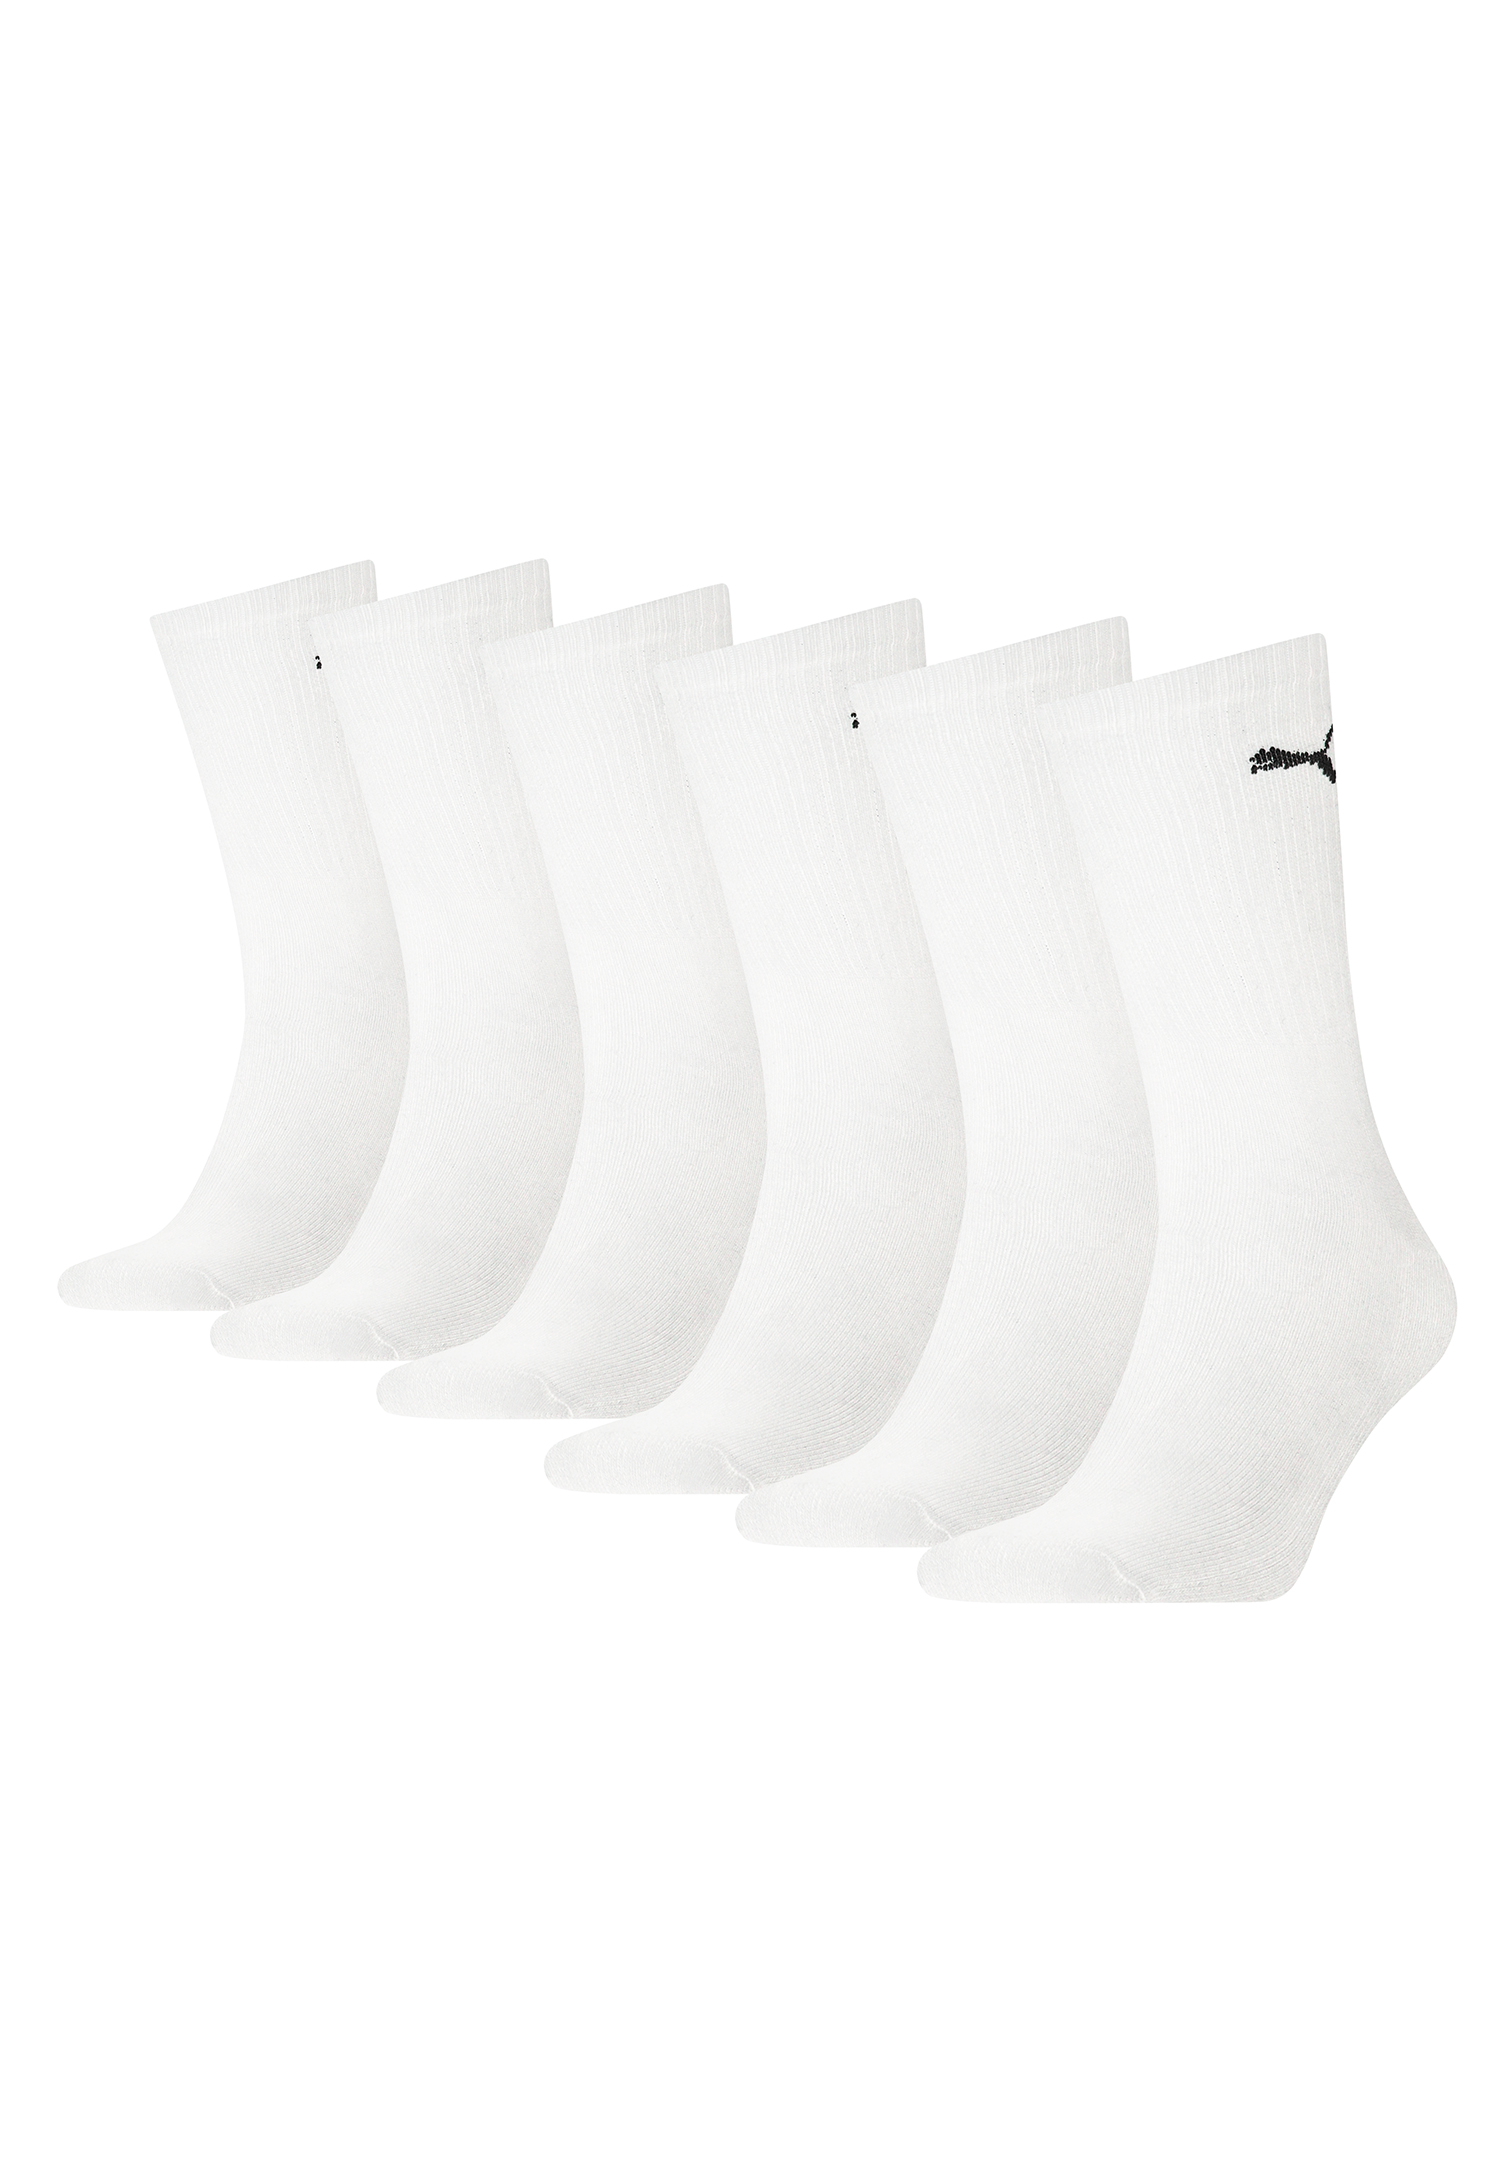 Puma Unisex Crew Tennissocken Sportsocken Socken für Damen Herren 6 Paar